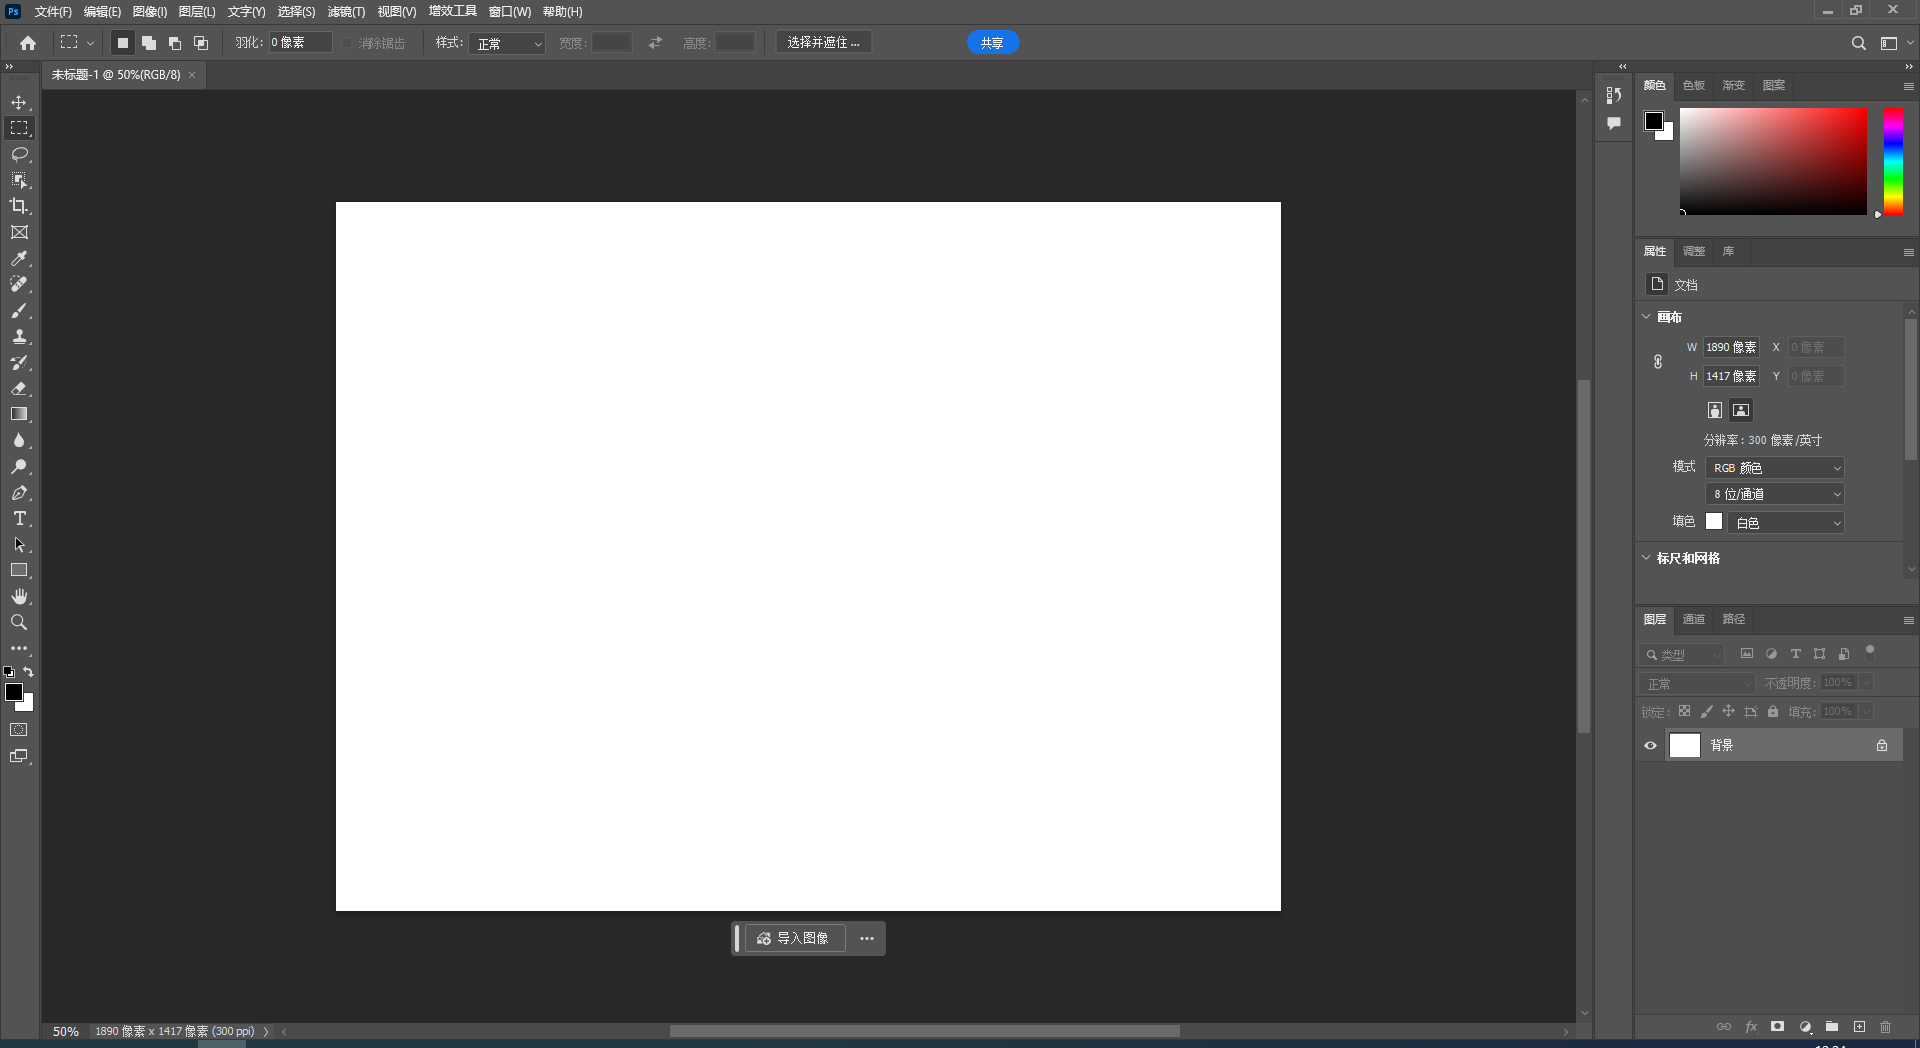 Adobe Photoshop 2024 v25.6.0【ps最新版】免费破解版安装图文教程、破解注册方法